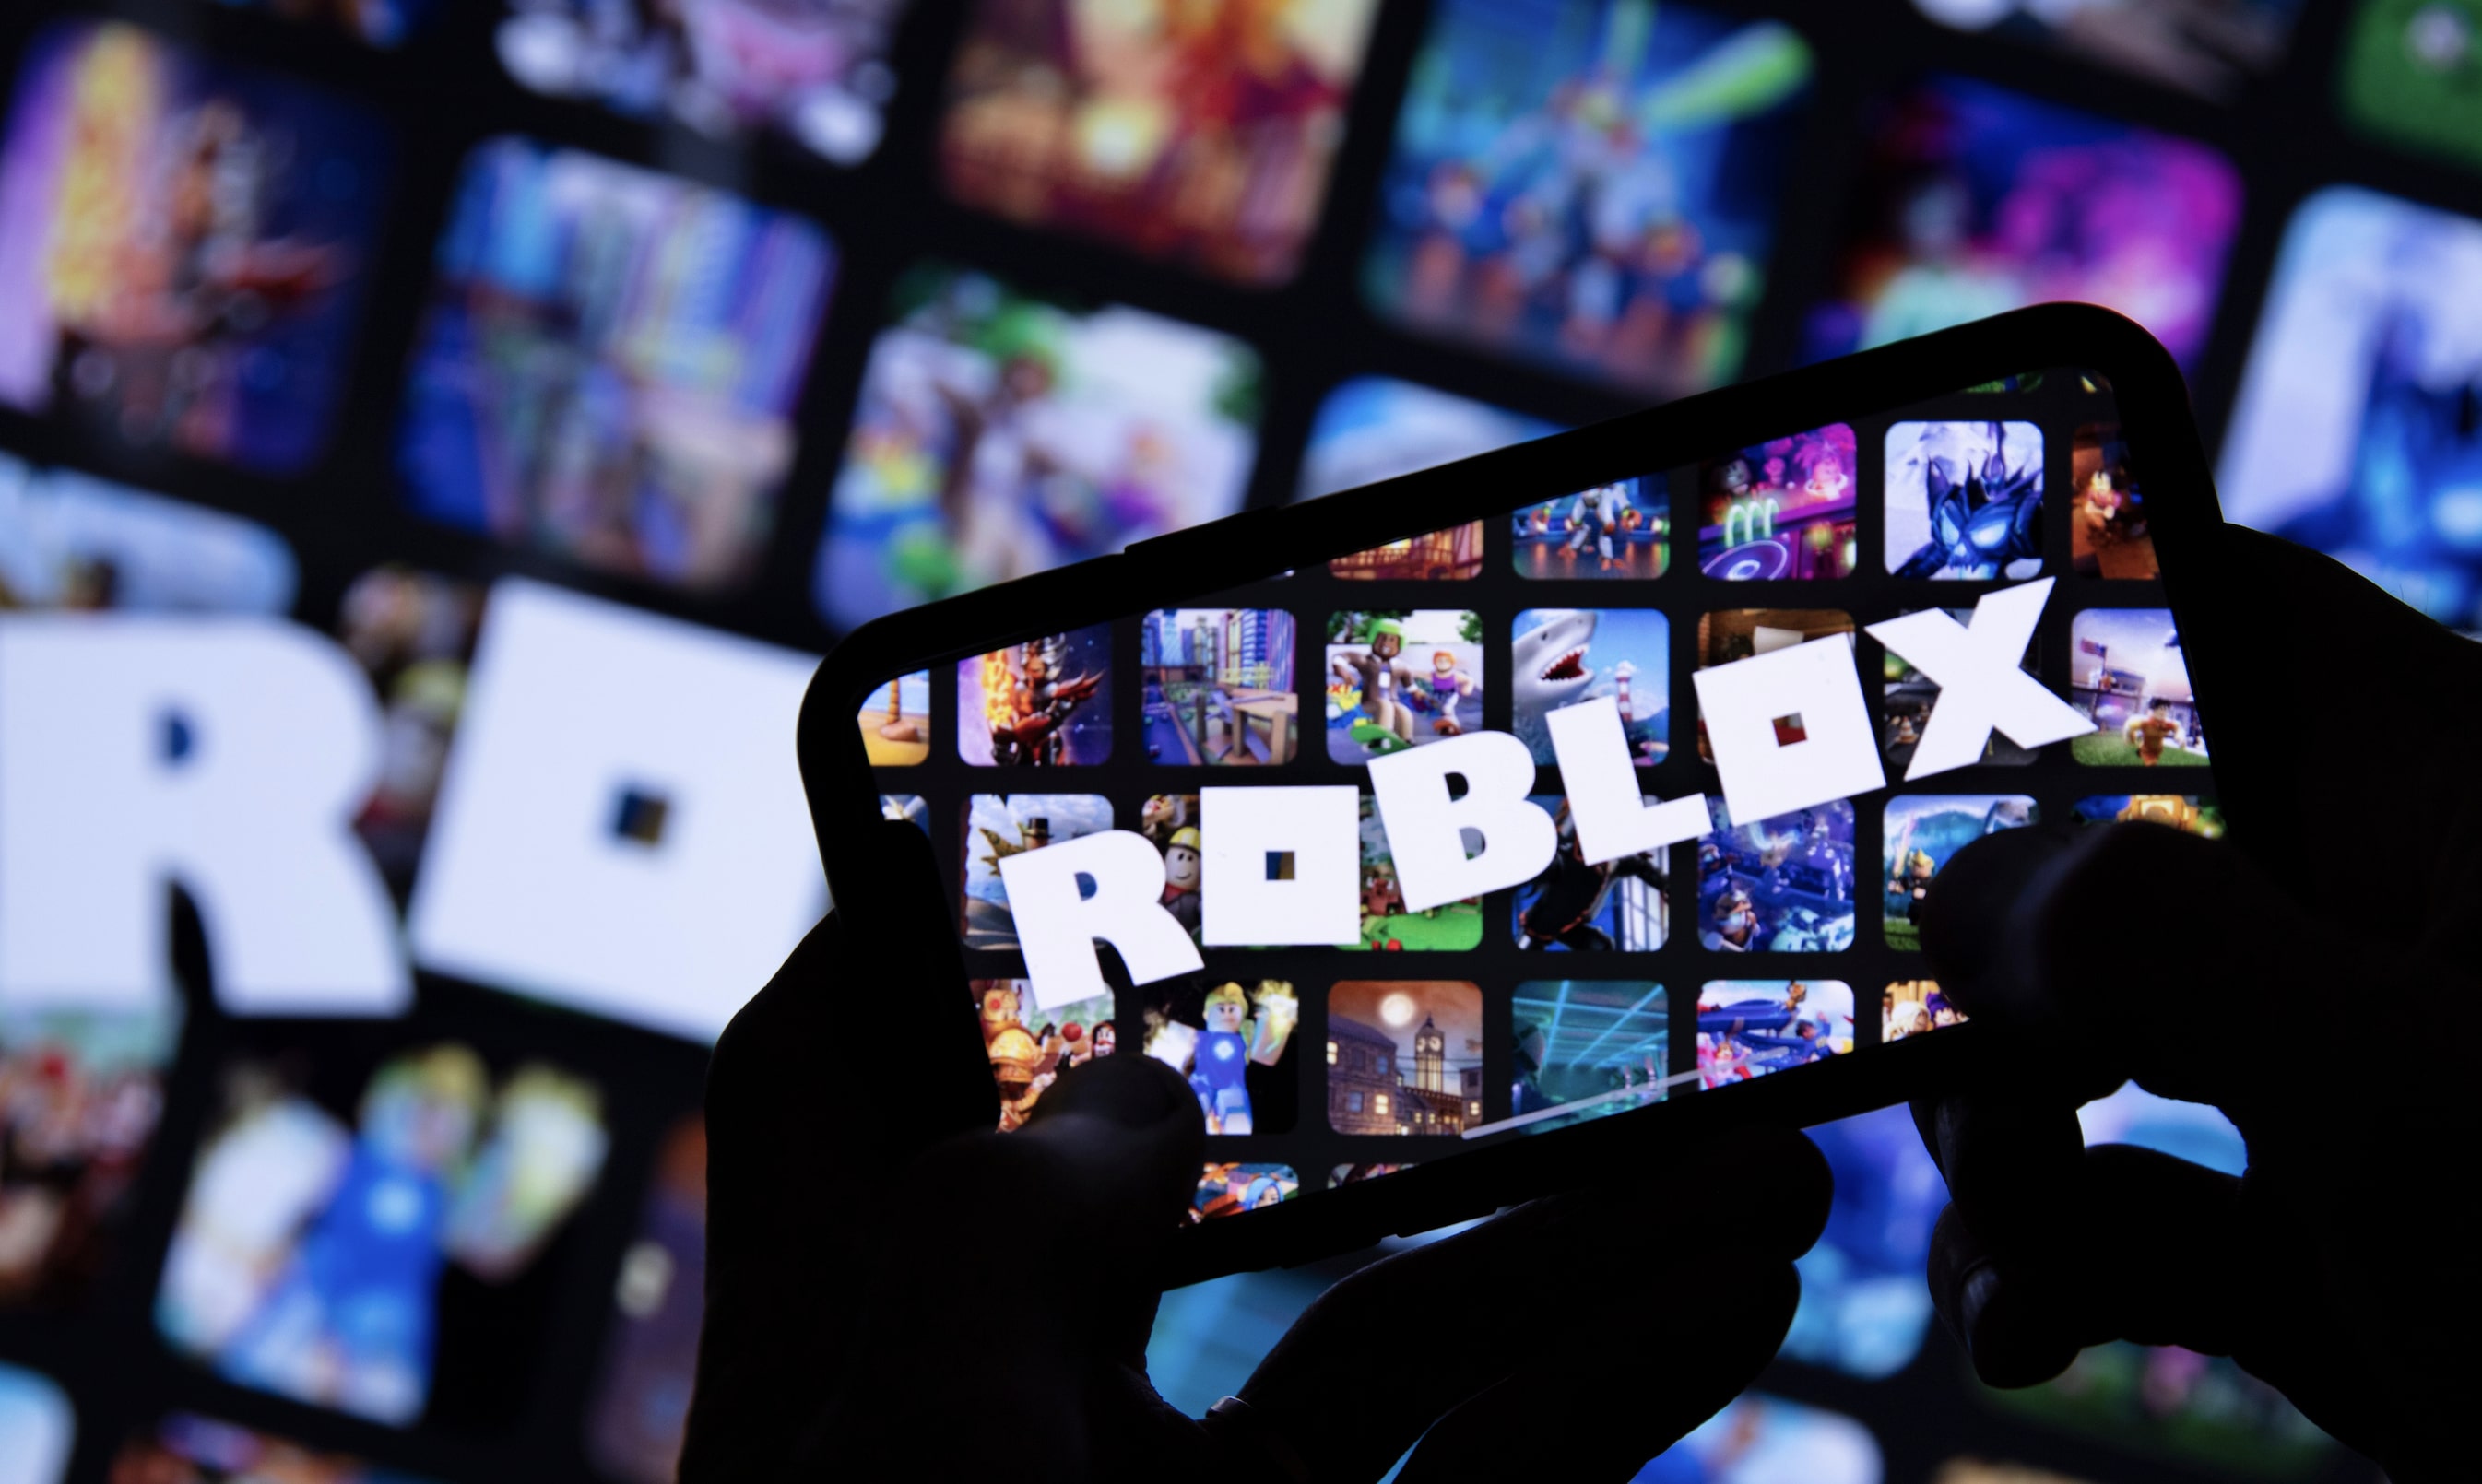 Roblox: VR ist der neue Wachstumstreiber